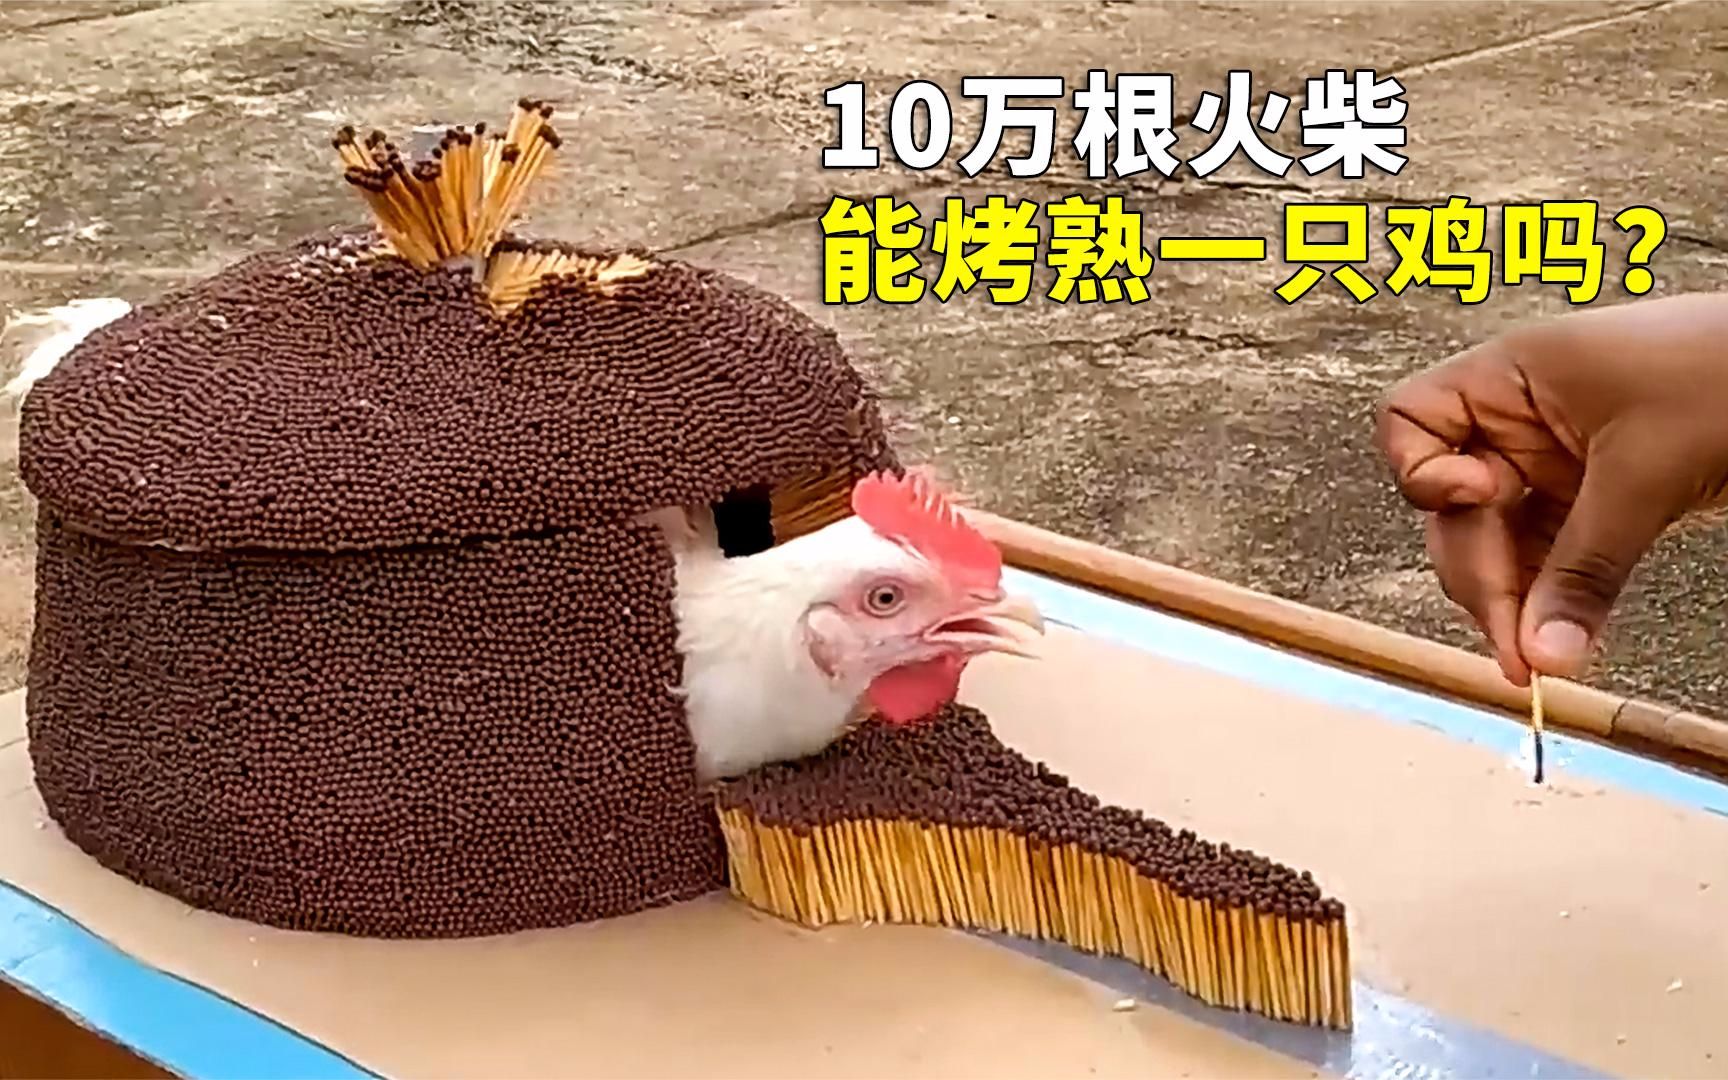 趣味实验！点燃10万根火柴，你觉得能烤熟一只鸡吗？